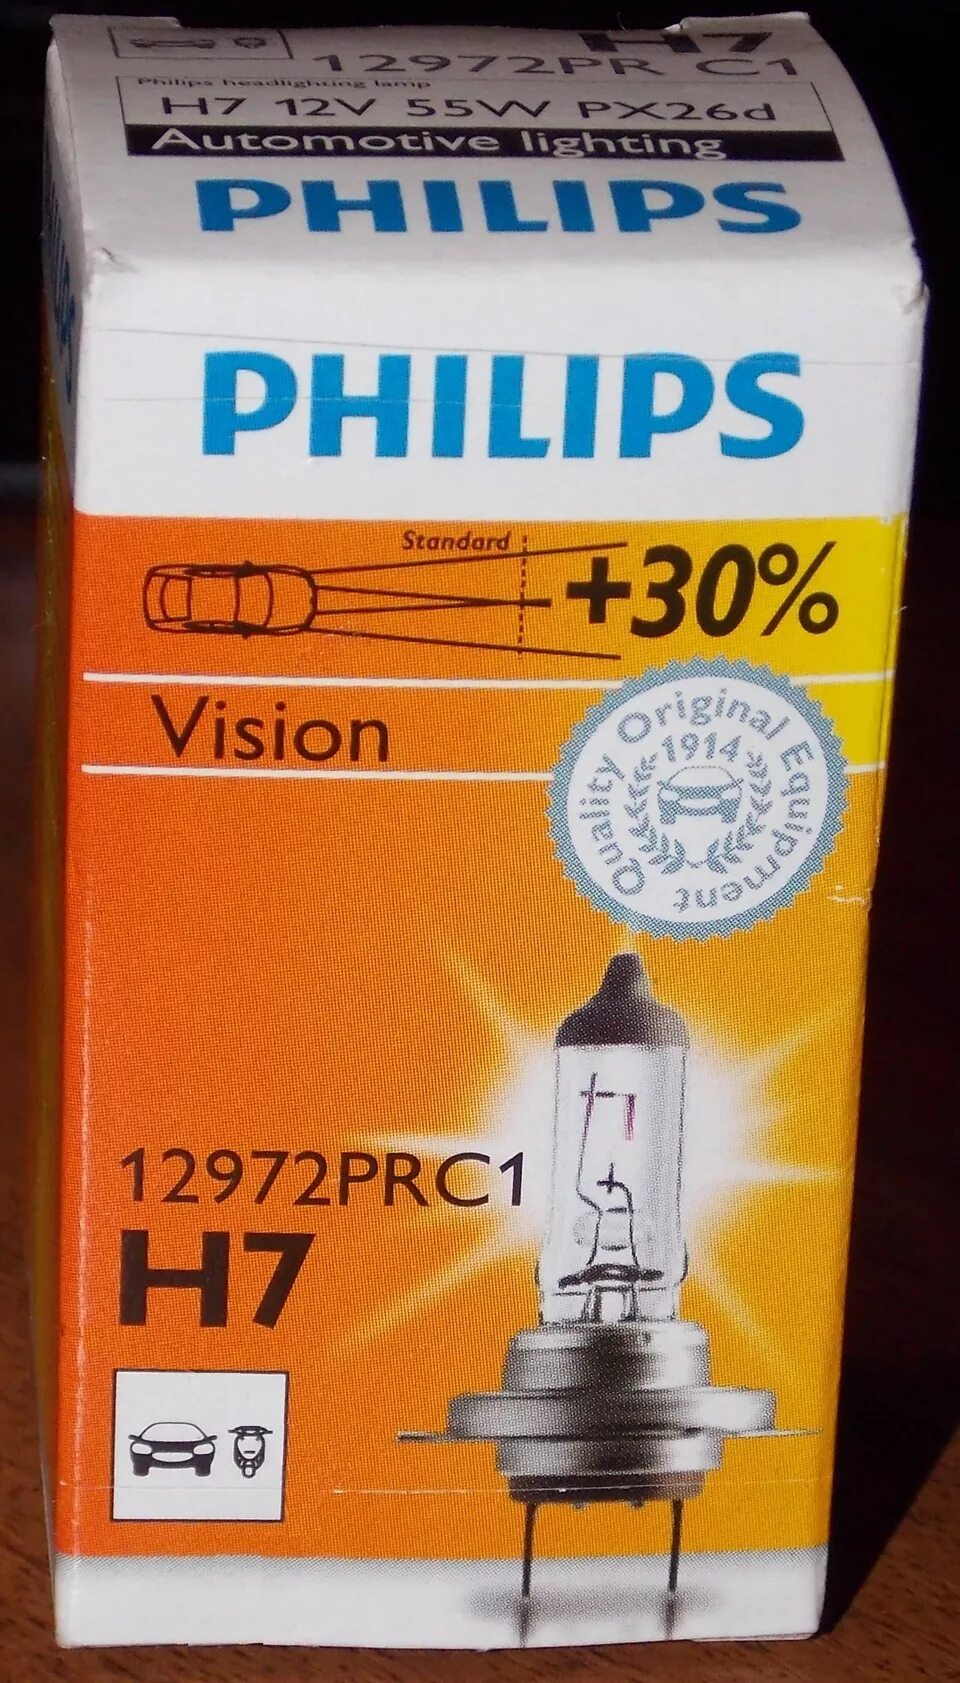 Лампа ближнего света филипс. Лампа ближнего света н7 Филипс. 12972prc1 Philips h7. Лампочки Philips 12972prc1. Филипс +30 h7.